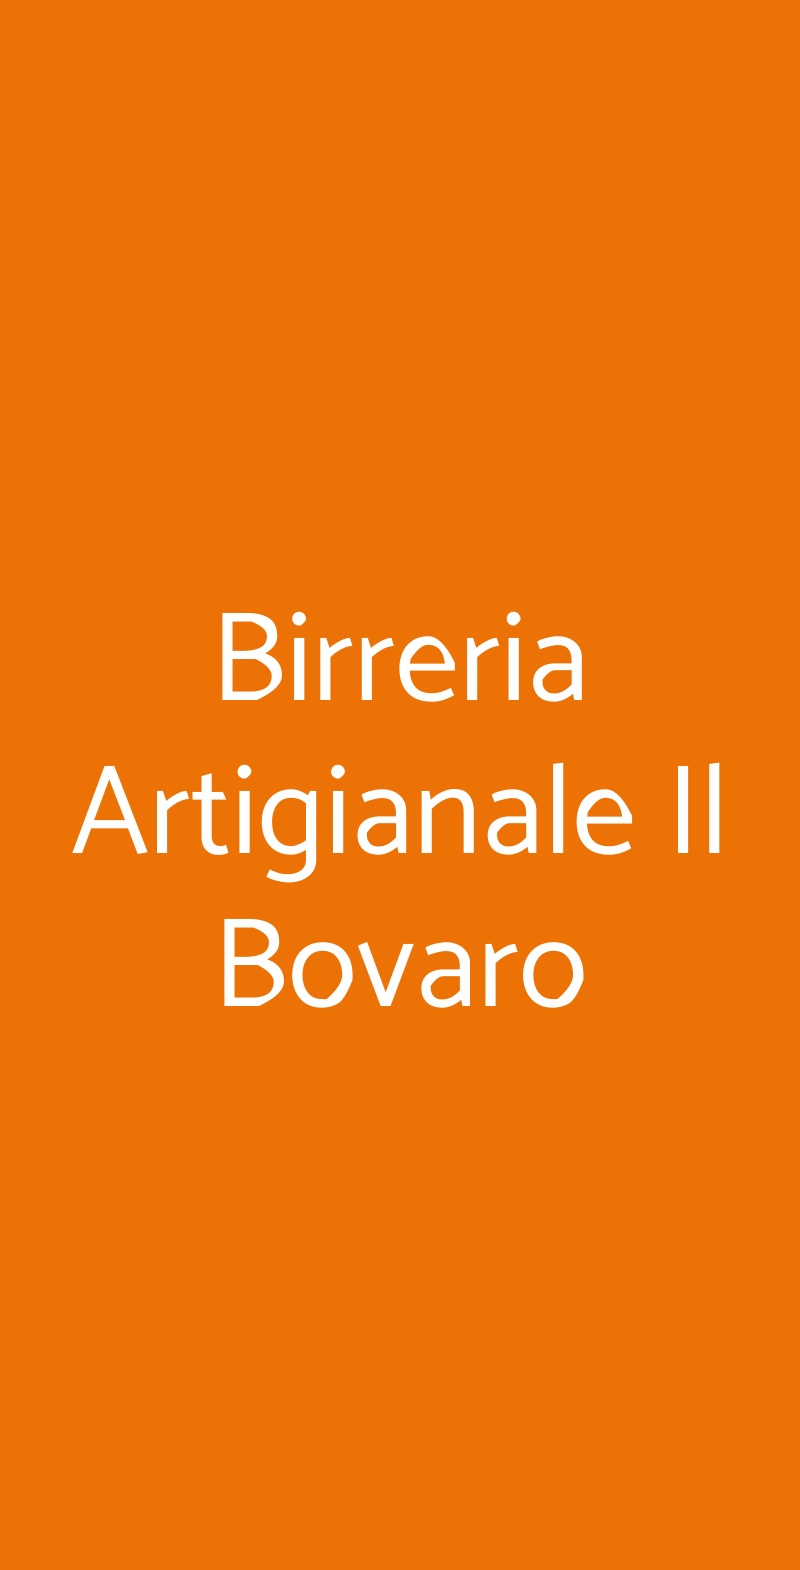 Birreria Artigianale Il Bovaro Firenze menù 1 pagina